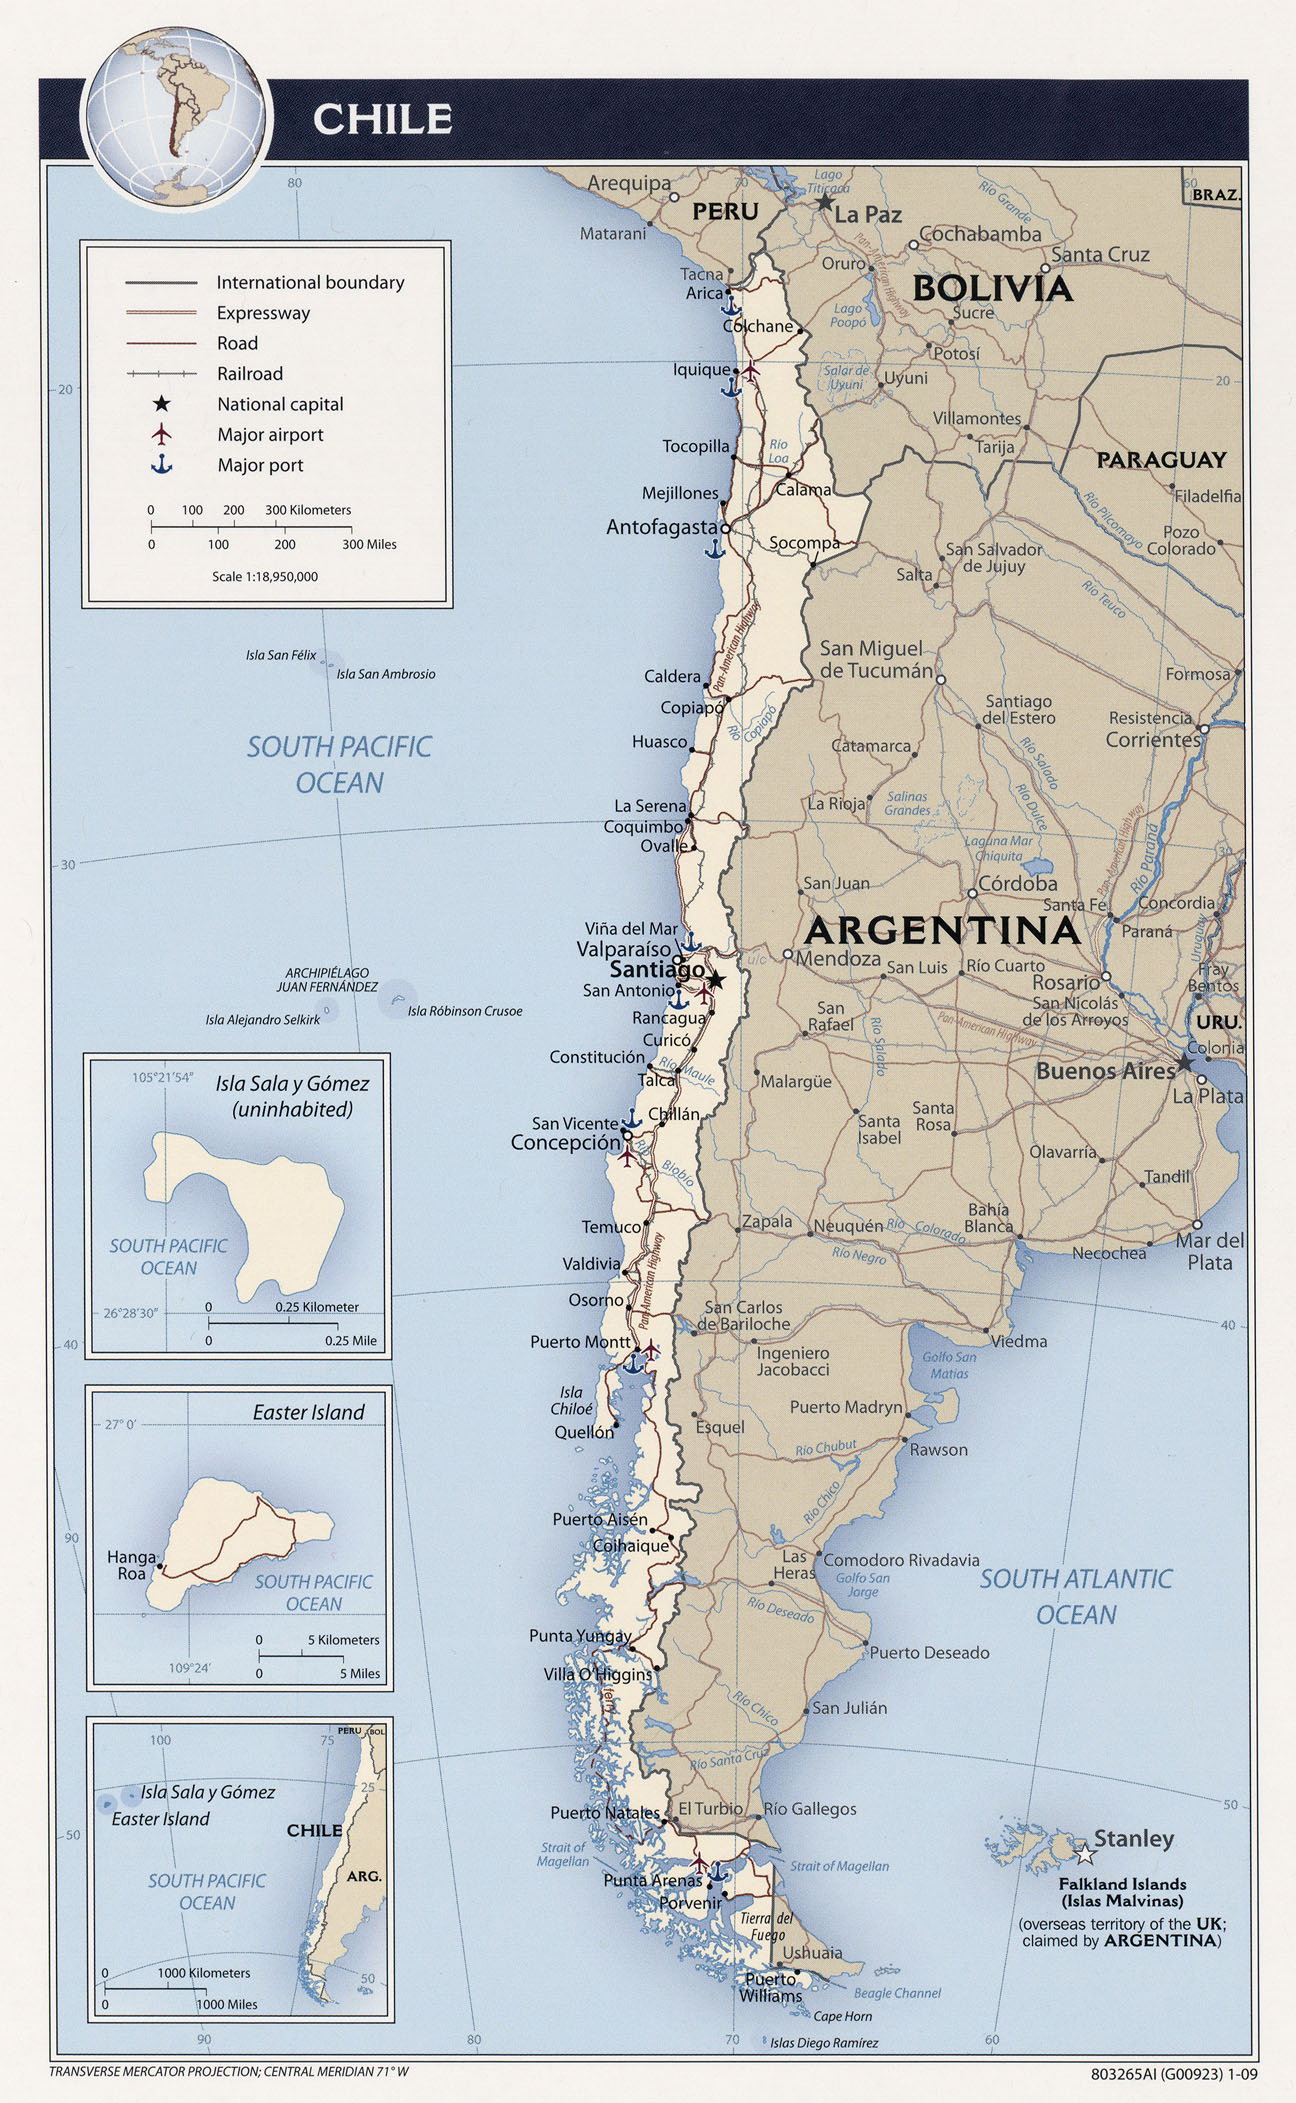 Chile : Mapas, Datos del País, Viajes, Historia, Pueblos, Idiomas